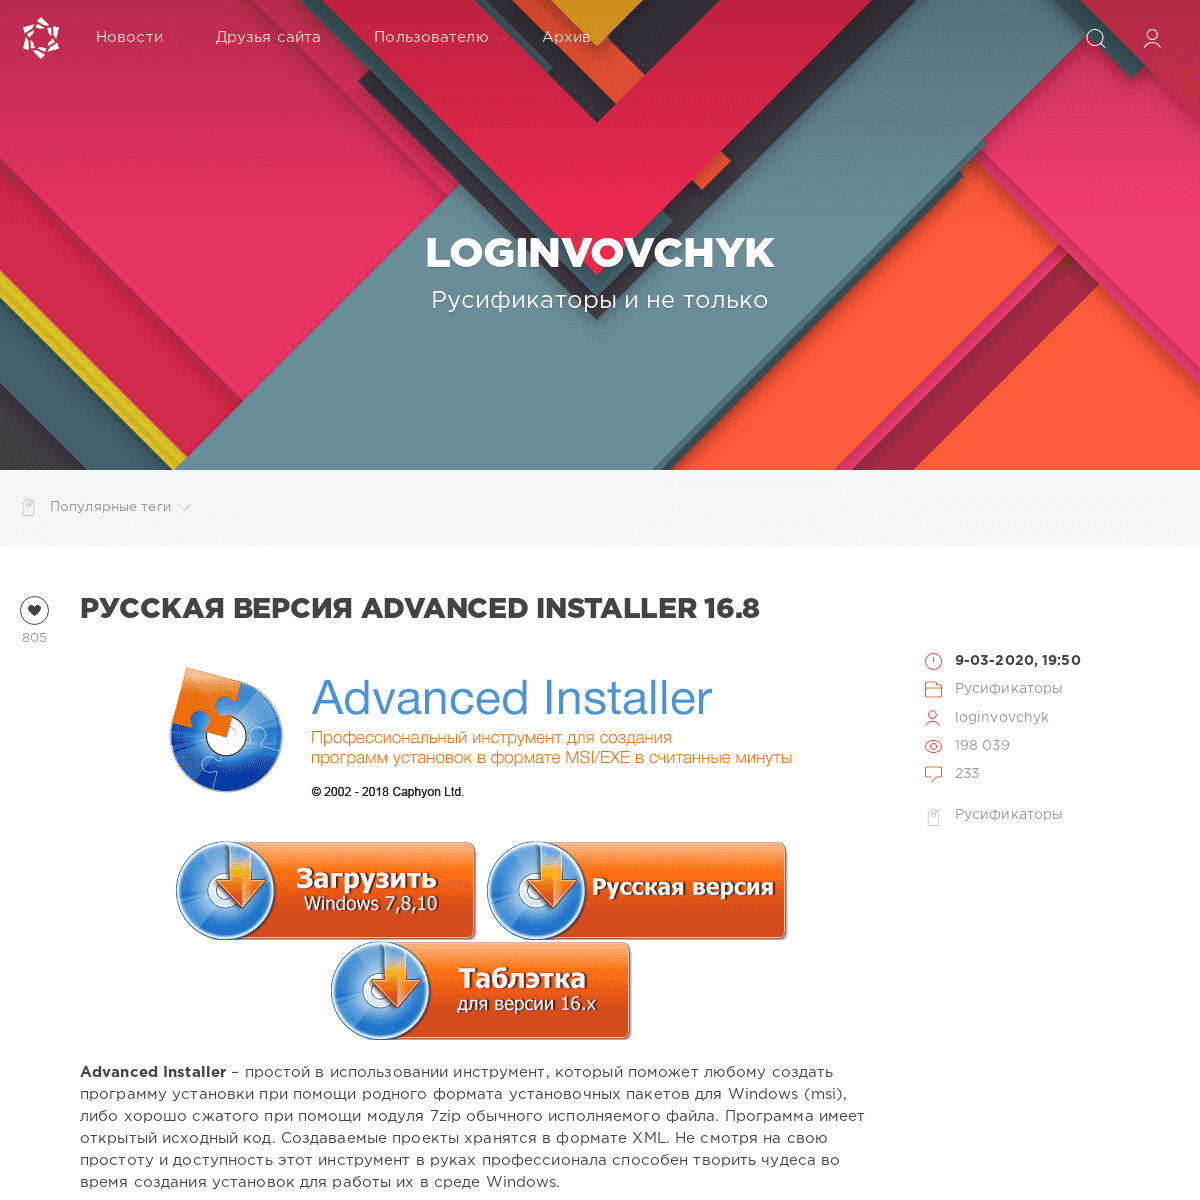 A complete backup of loginvovchyk.ru